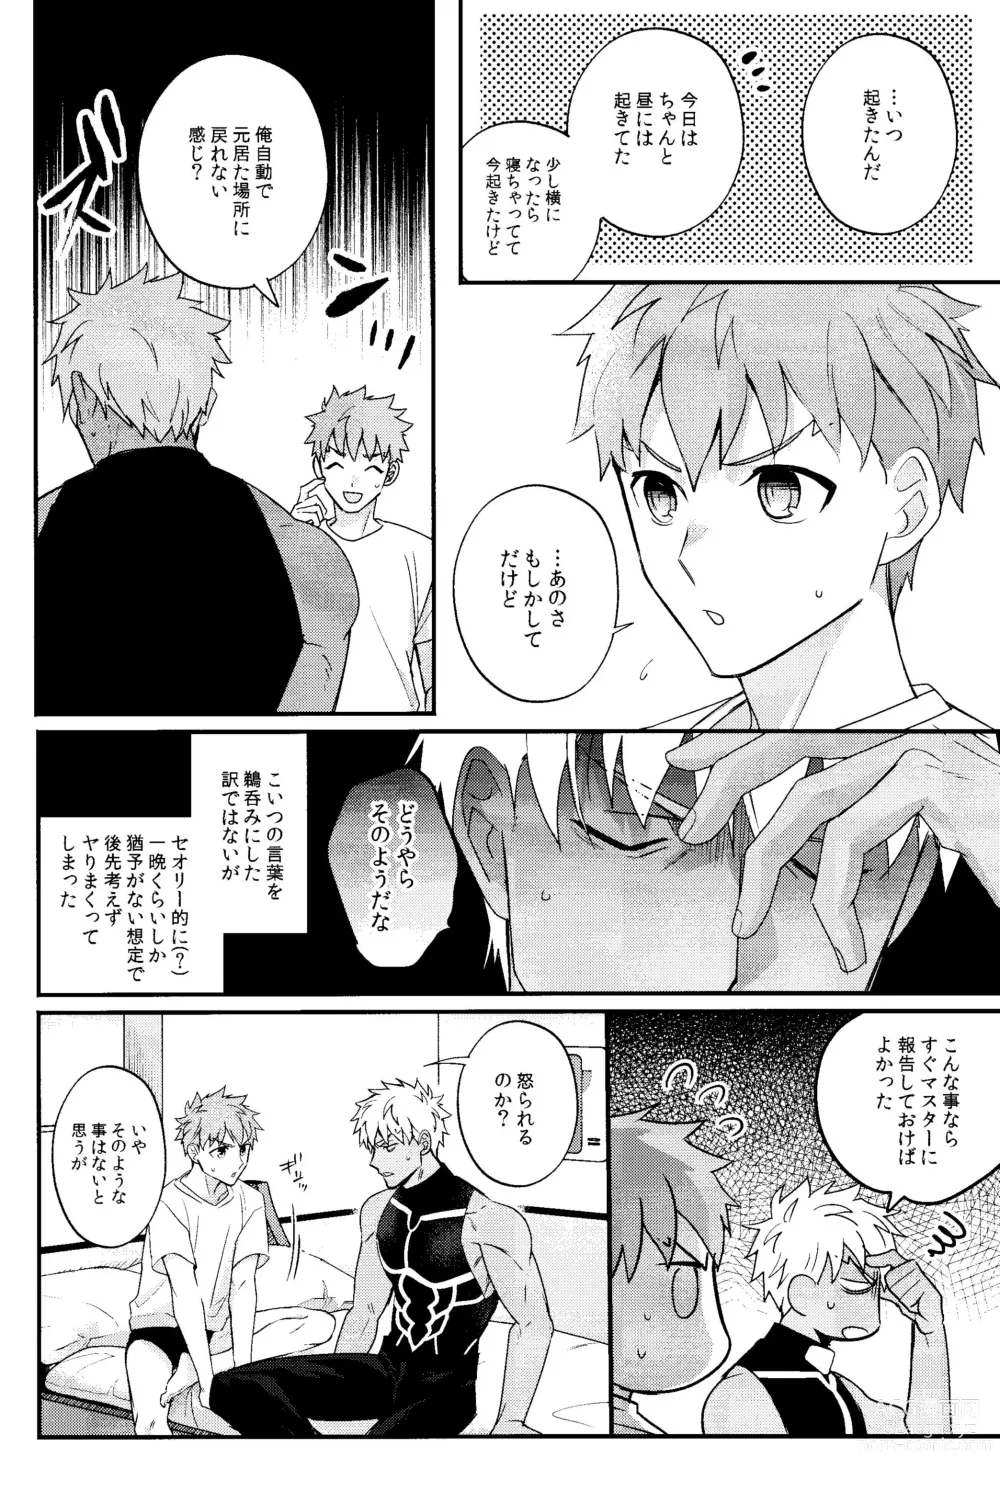 Page 9 of doujinshi Iru